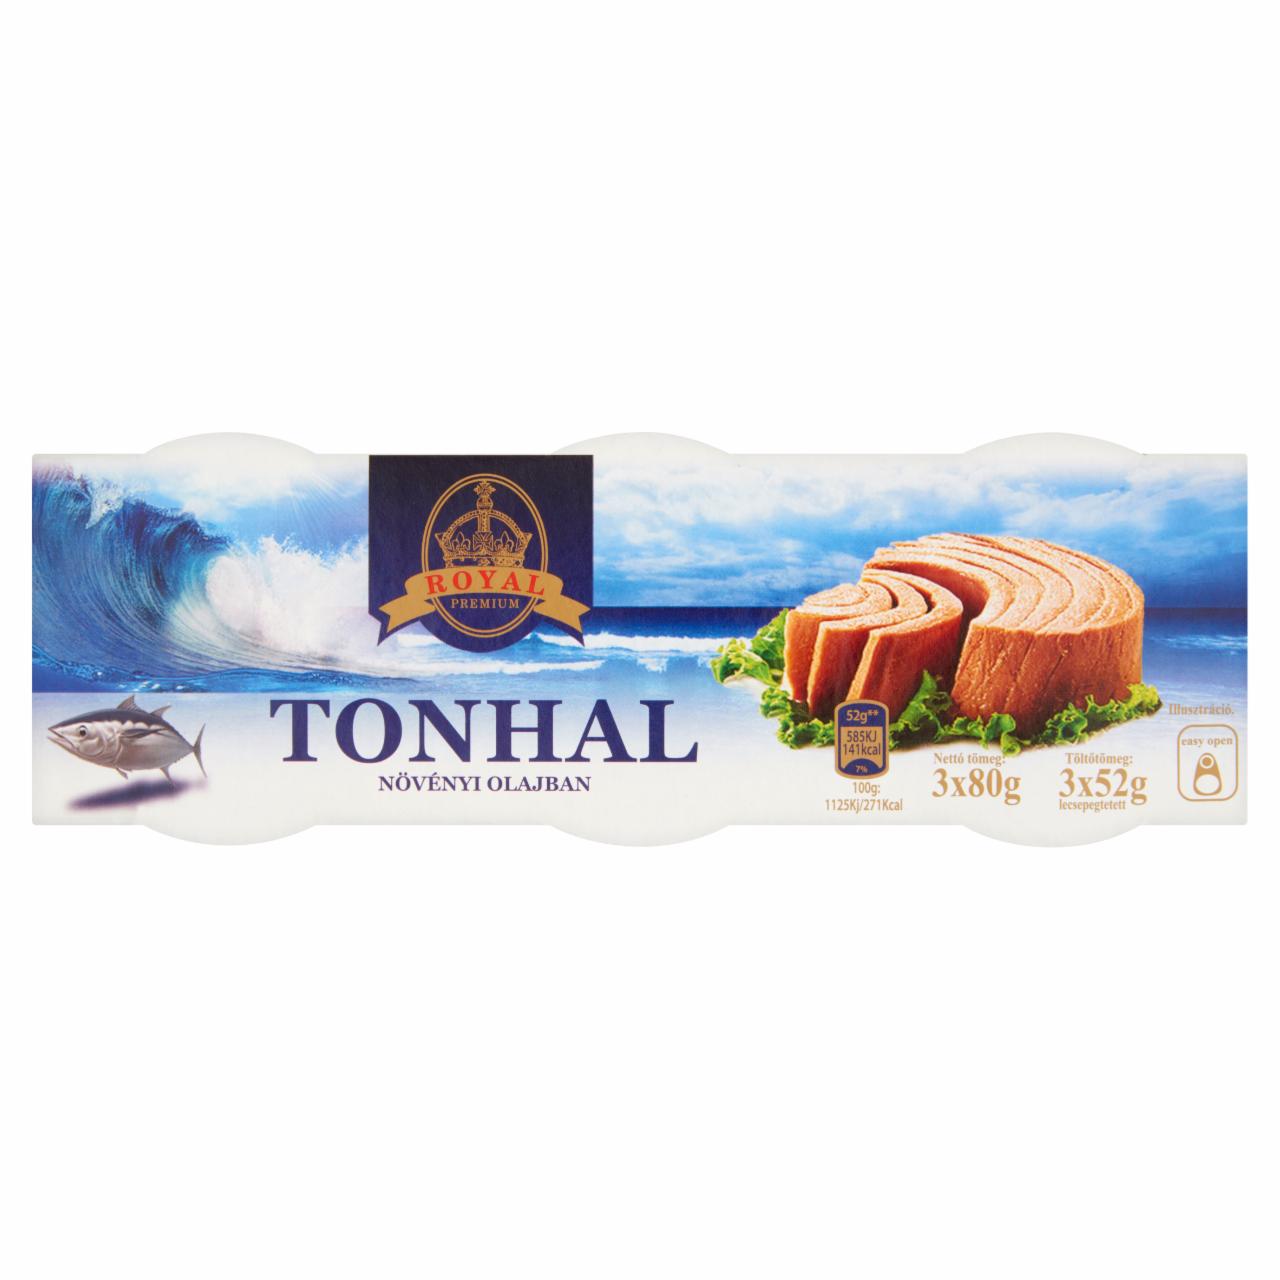 Képek - Royal tonhal növényi olajban 3 x 80 g